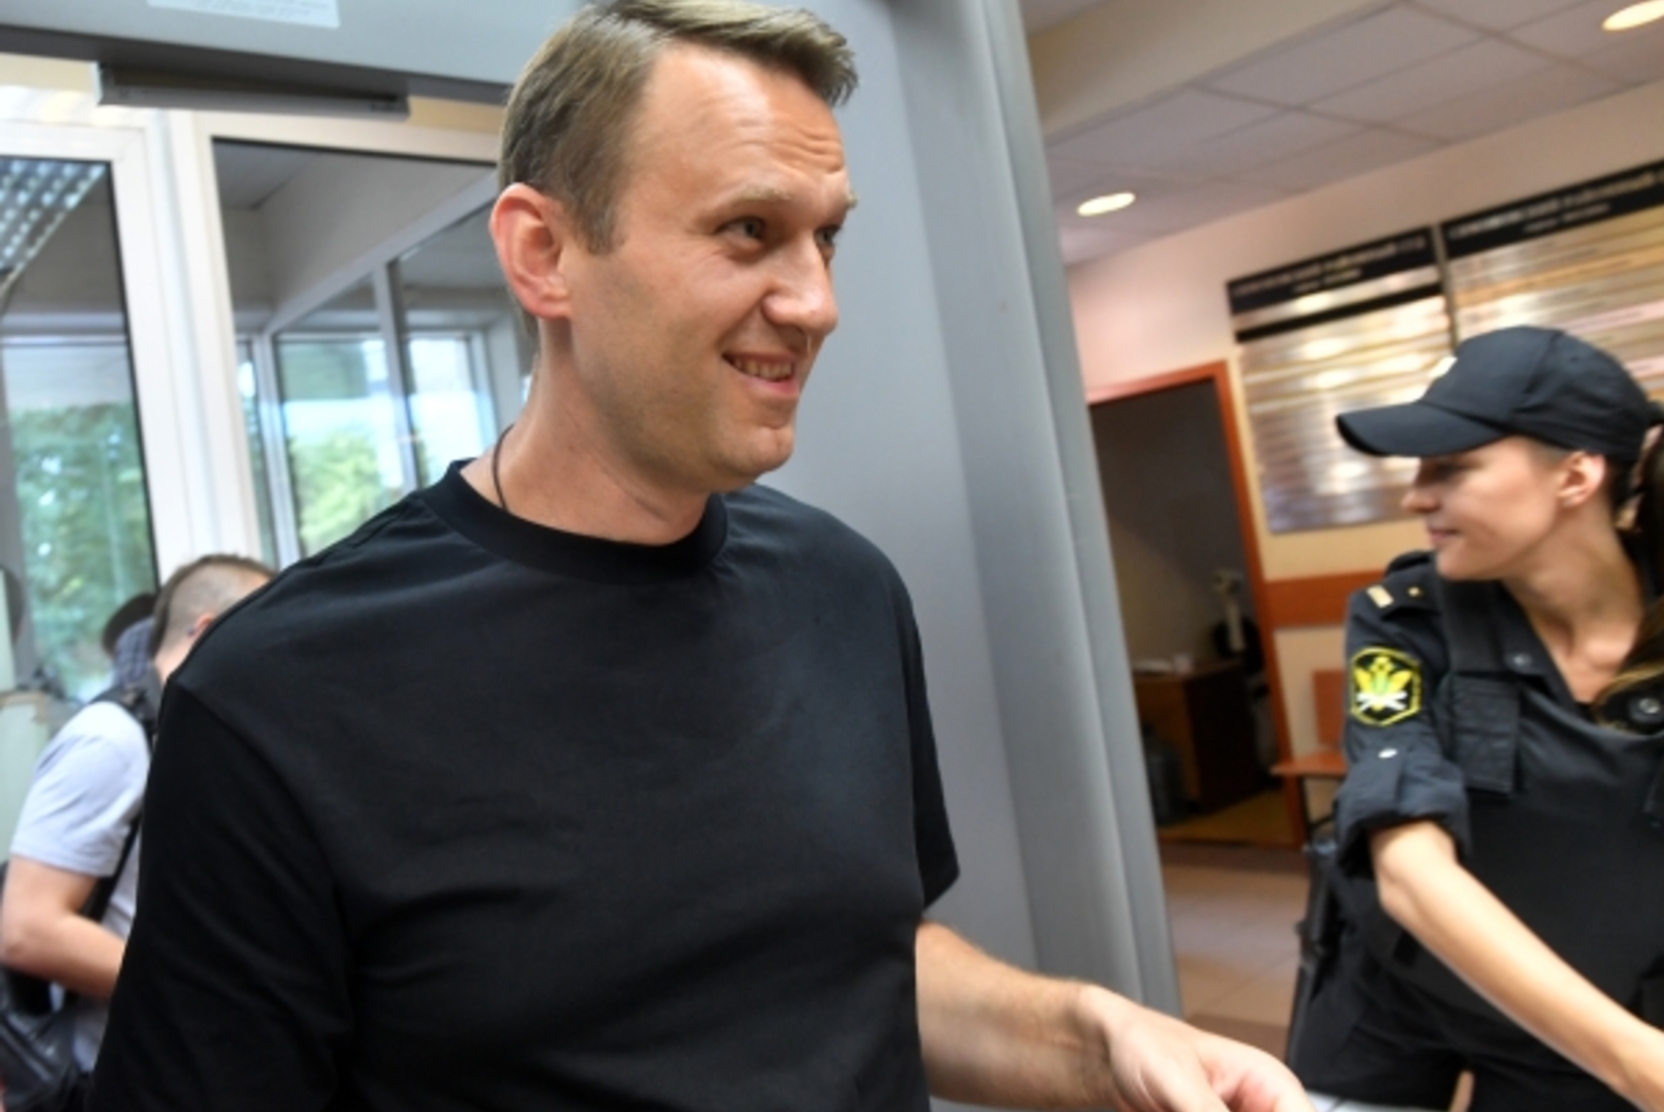 Декларация ради движухи. Политолог оценил доходы Навального